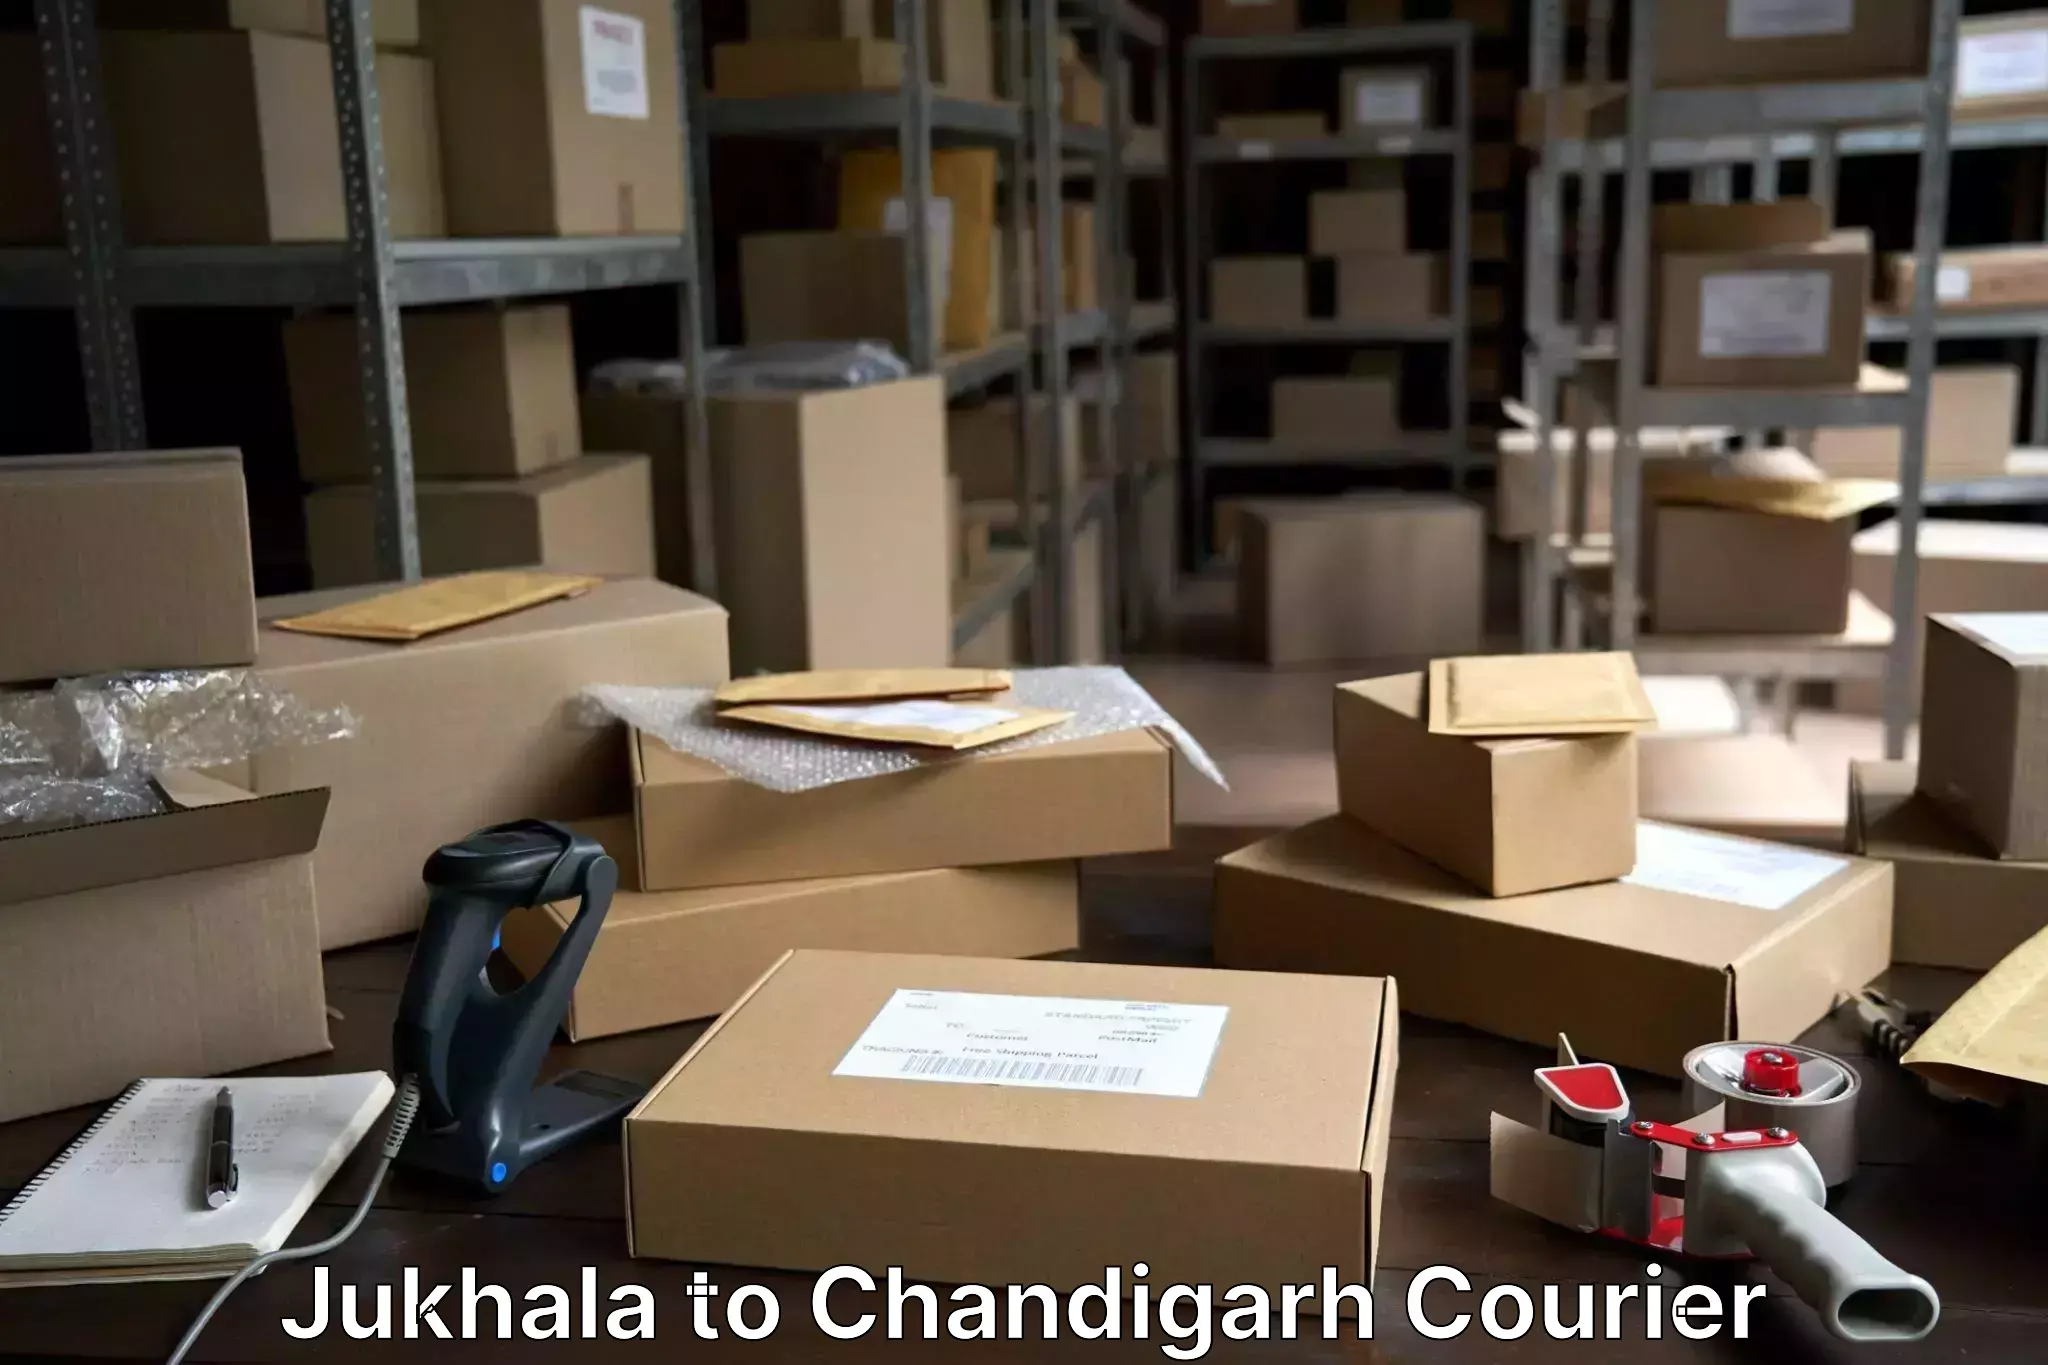 Luggage transfer service Jukhala to Panjab University Chandigarh